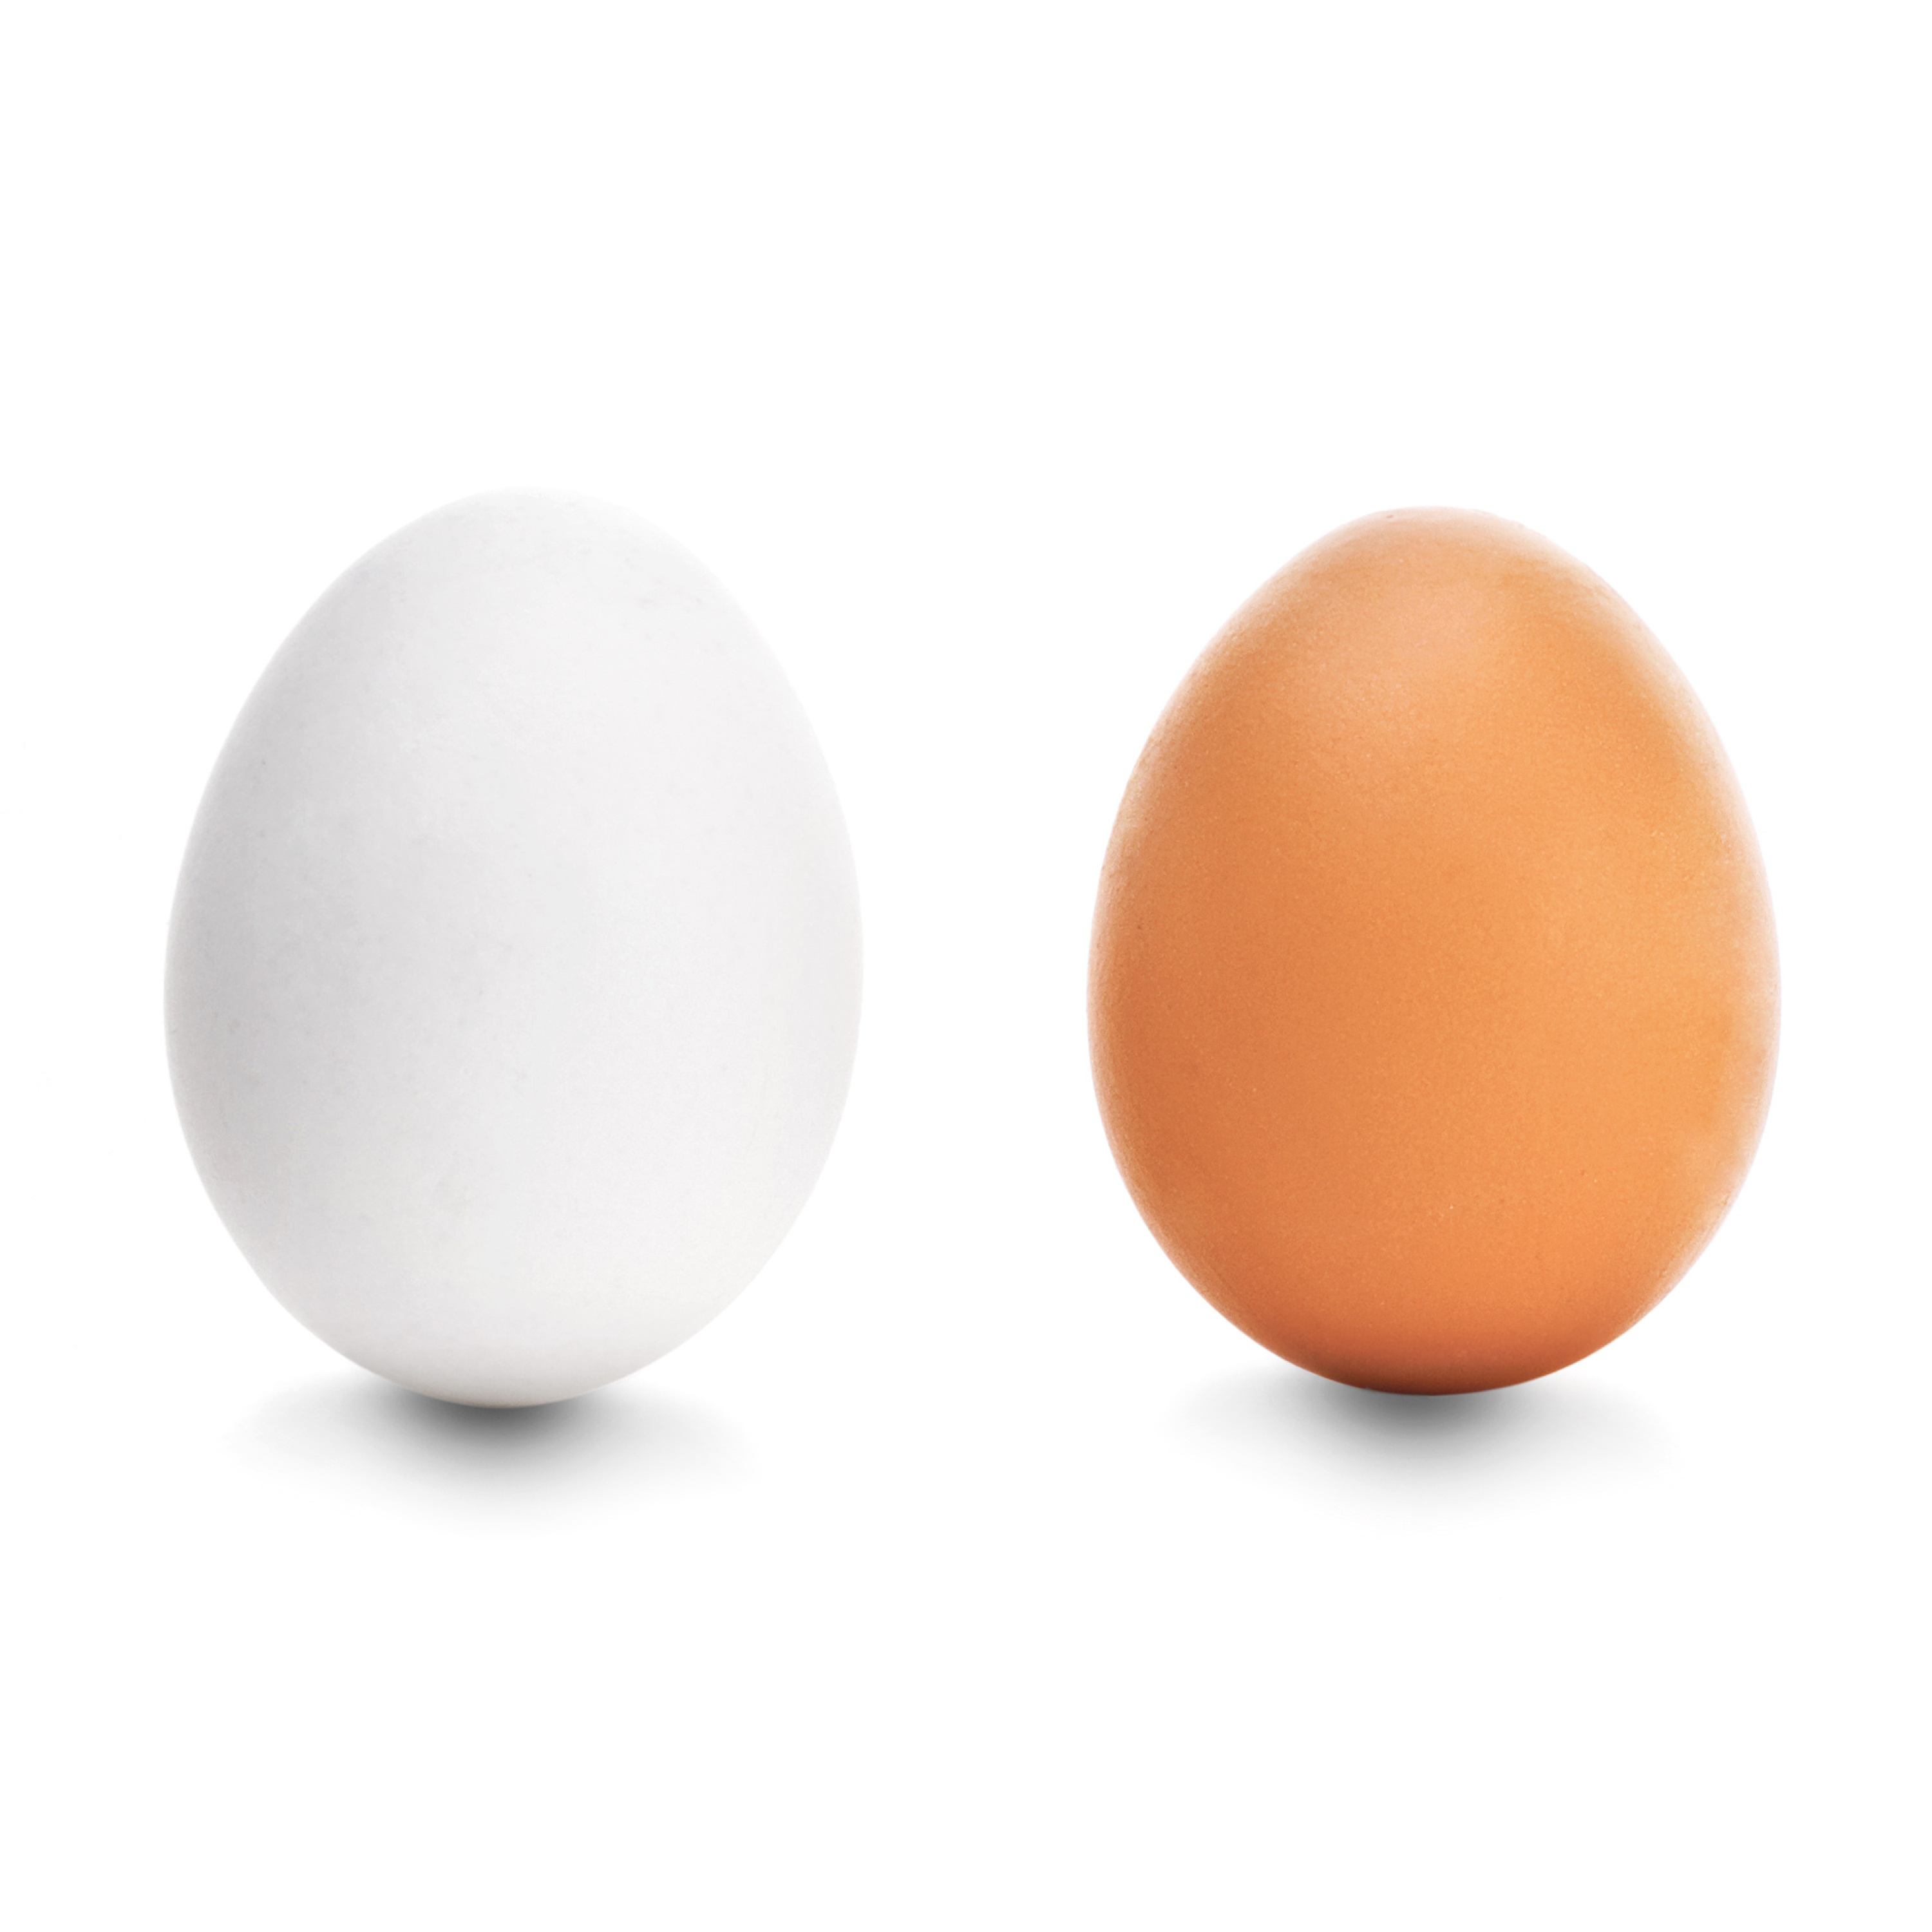 Skil van eiers